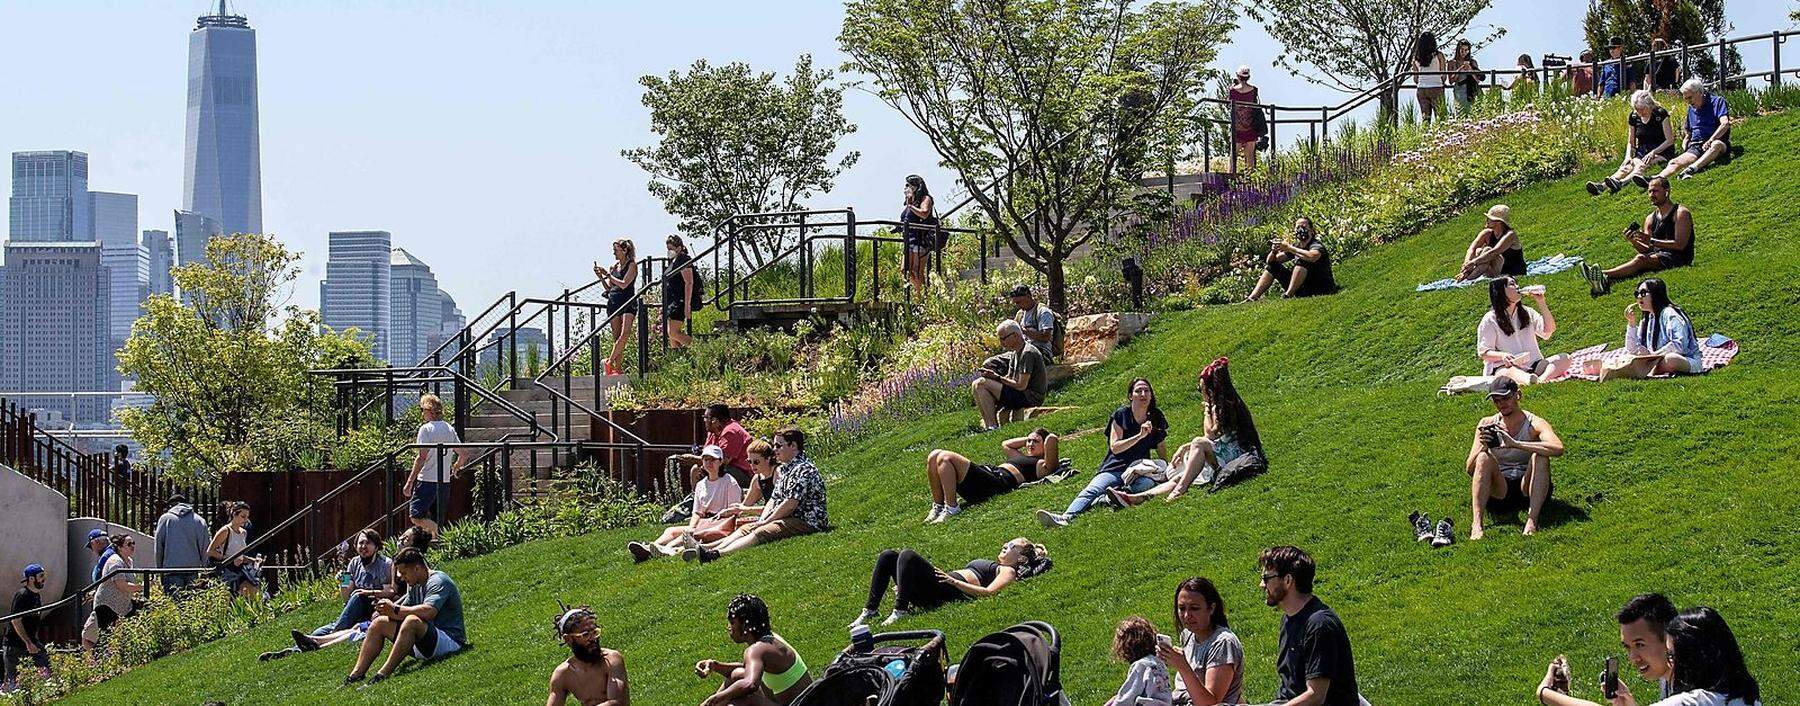 Little Island, der aufgeschüttete, auf Betonstelzen ruhende Park im Hudson River, ist die neueste Attraktion New Yorks.